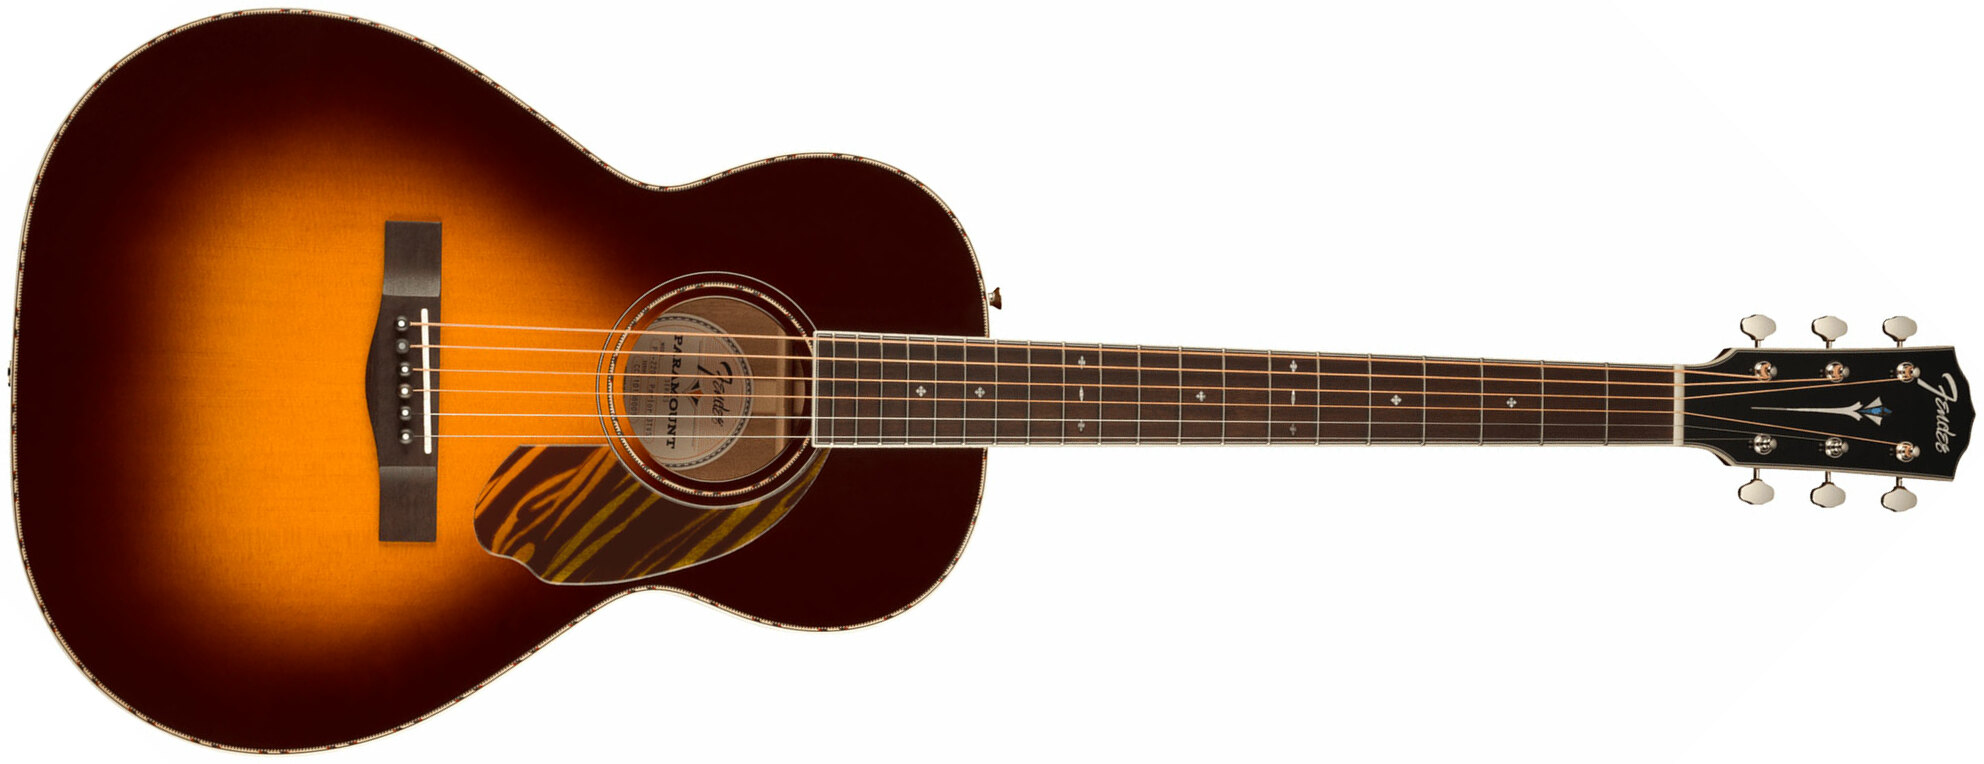 Fender Ps-220e Paramount Parlor Epicea Acajou Ova - 3-color Vintage Sunburst - Guitare Electro Acoustique - Main picture